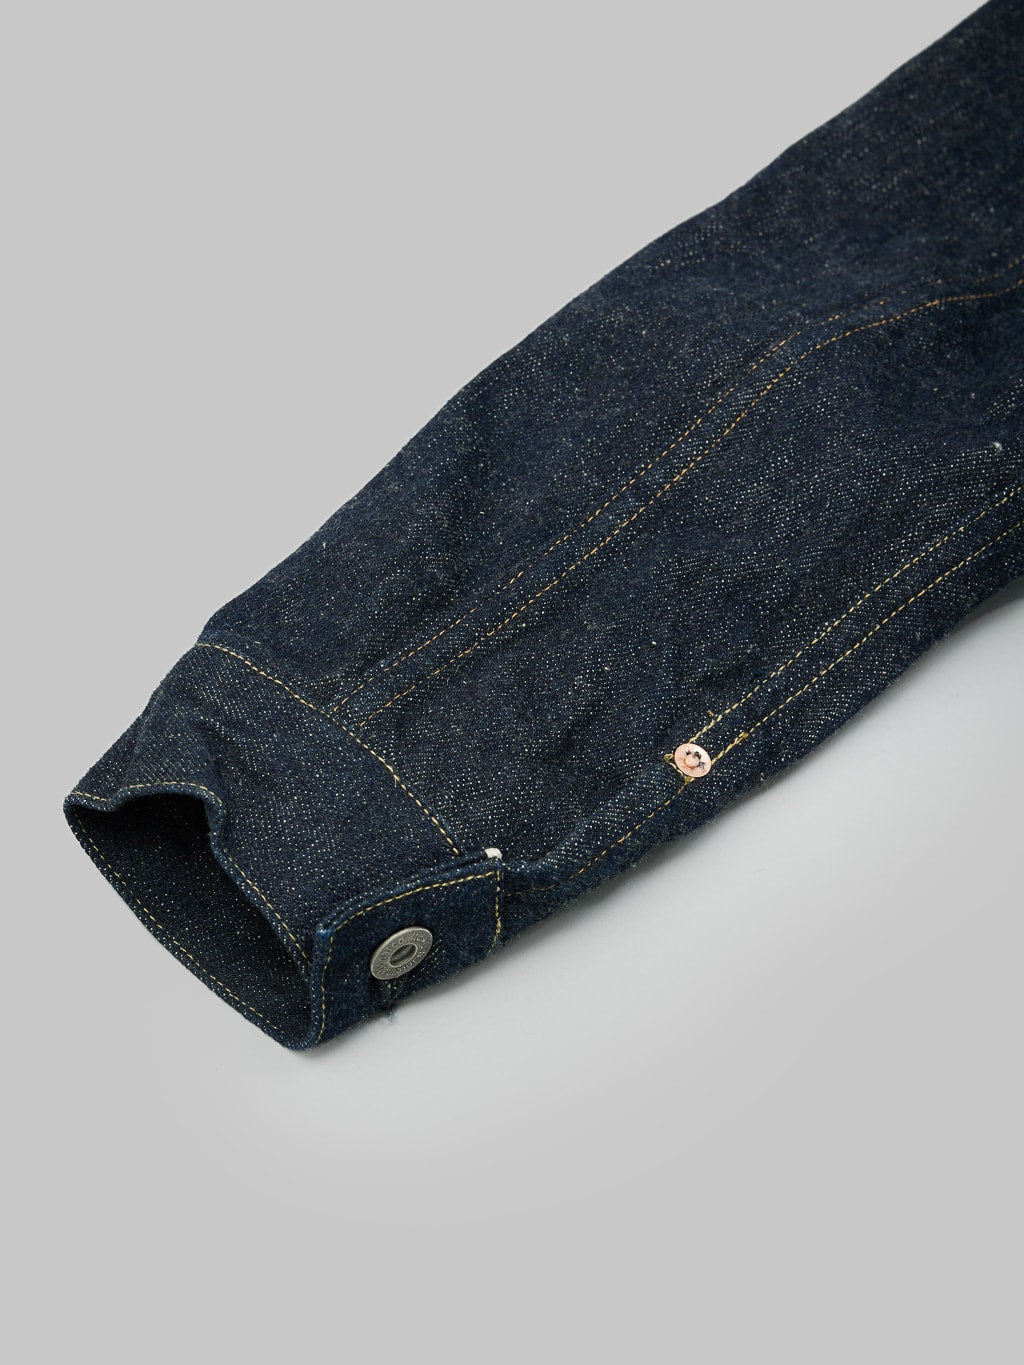 ONI Natural Indigo Rope Dyeing Denim Type I Jacket sleeve details